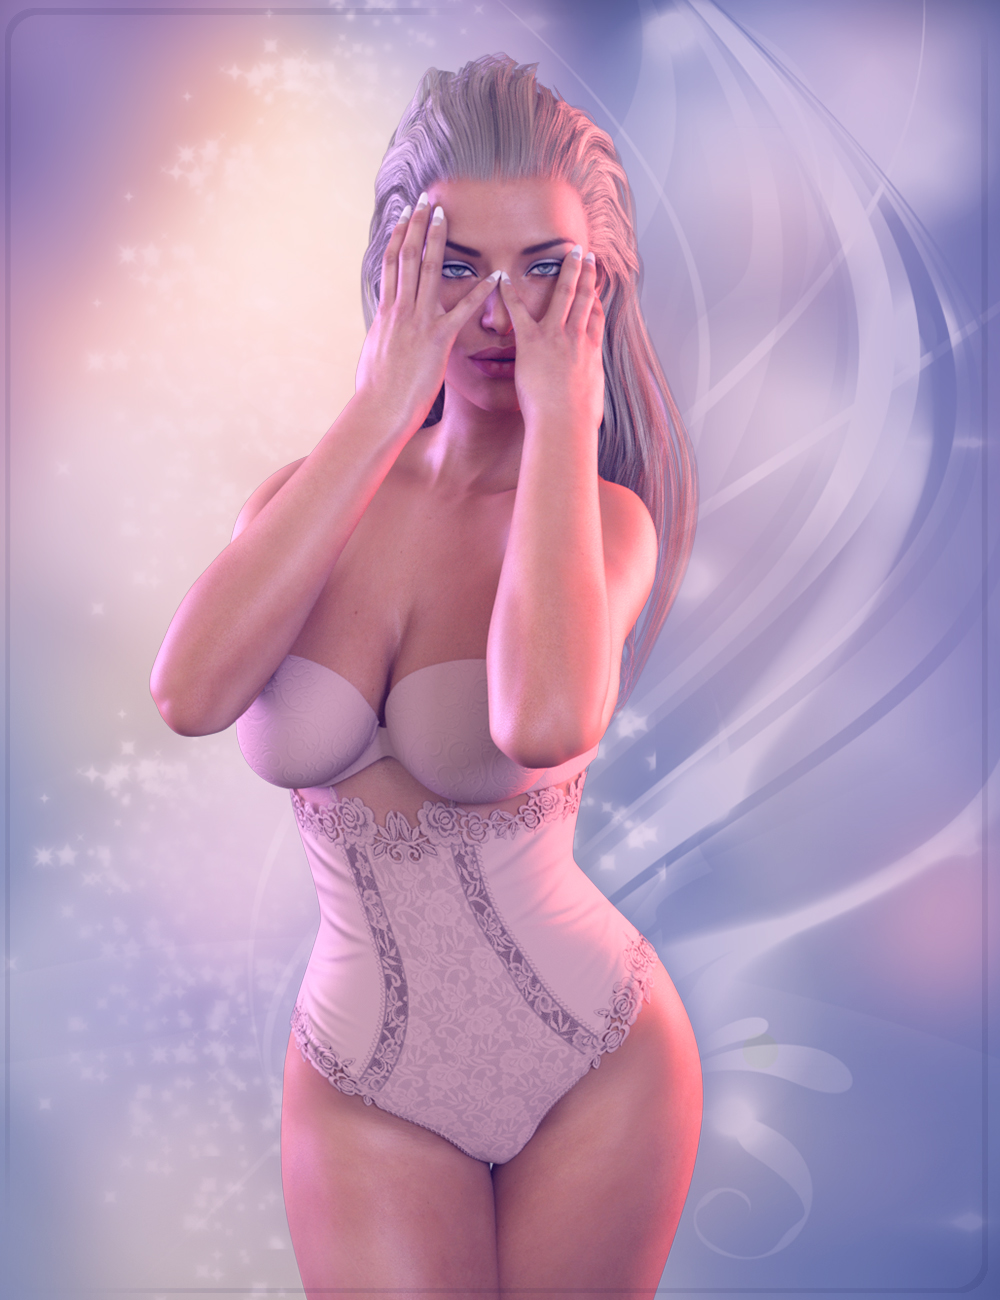 Z Sensuous - Poses for the Genesis 3 Female(s) by: Zeddicuss, 3D Models by Daz 3D